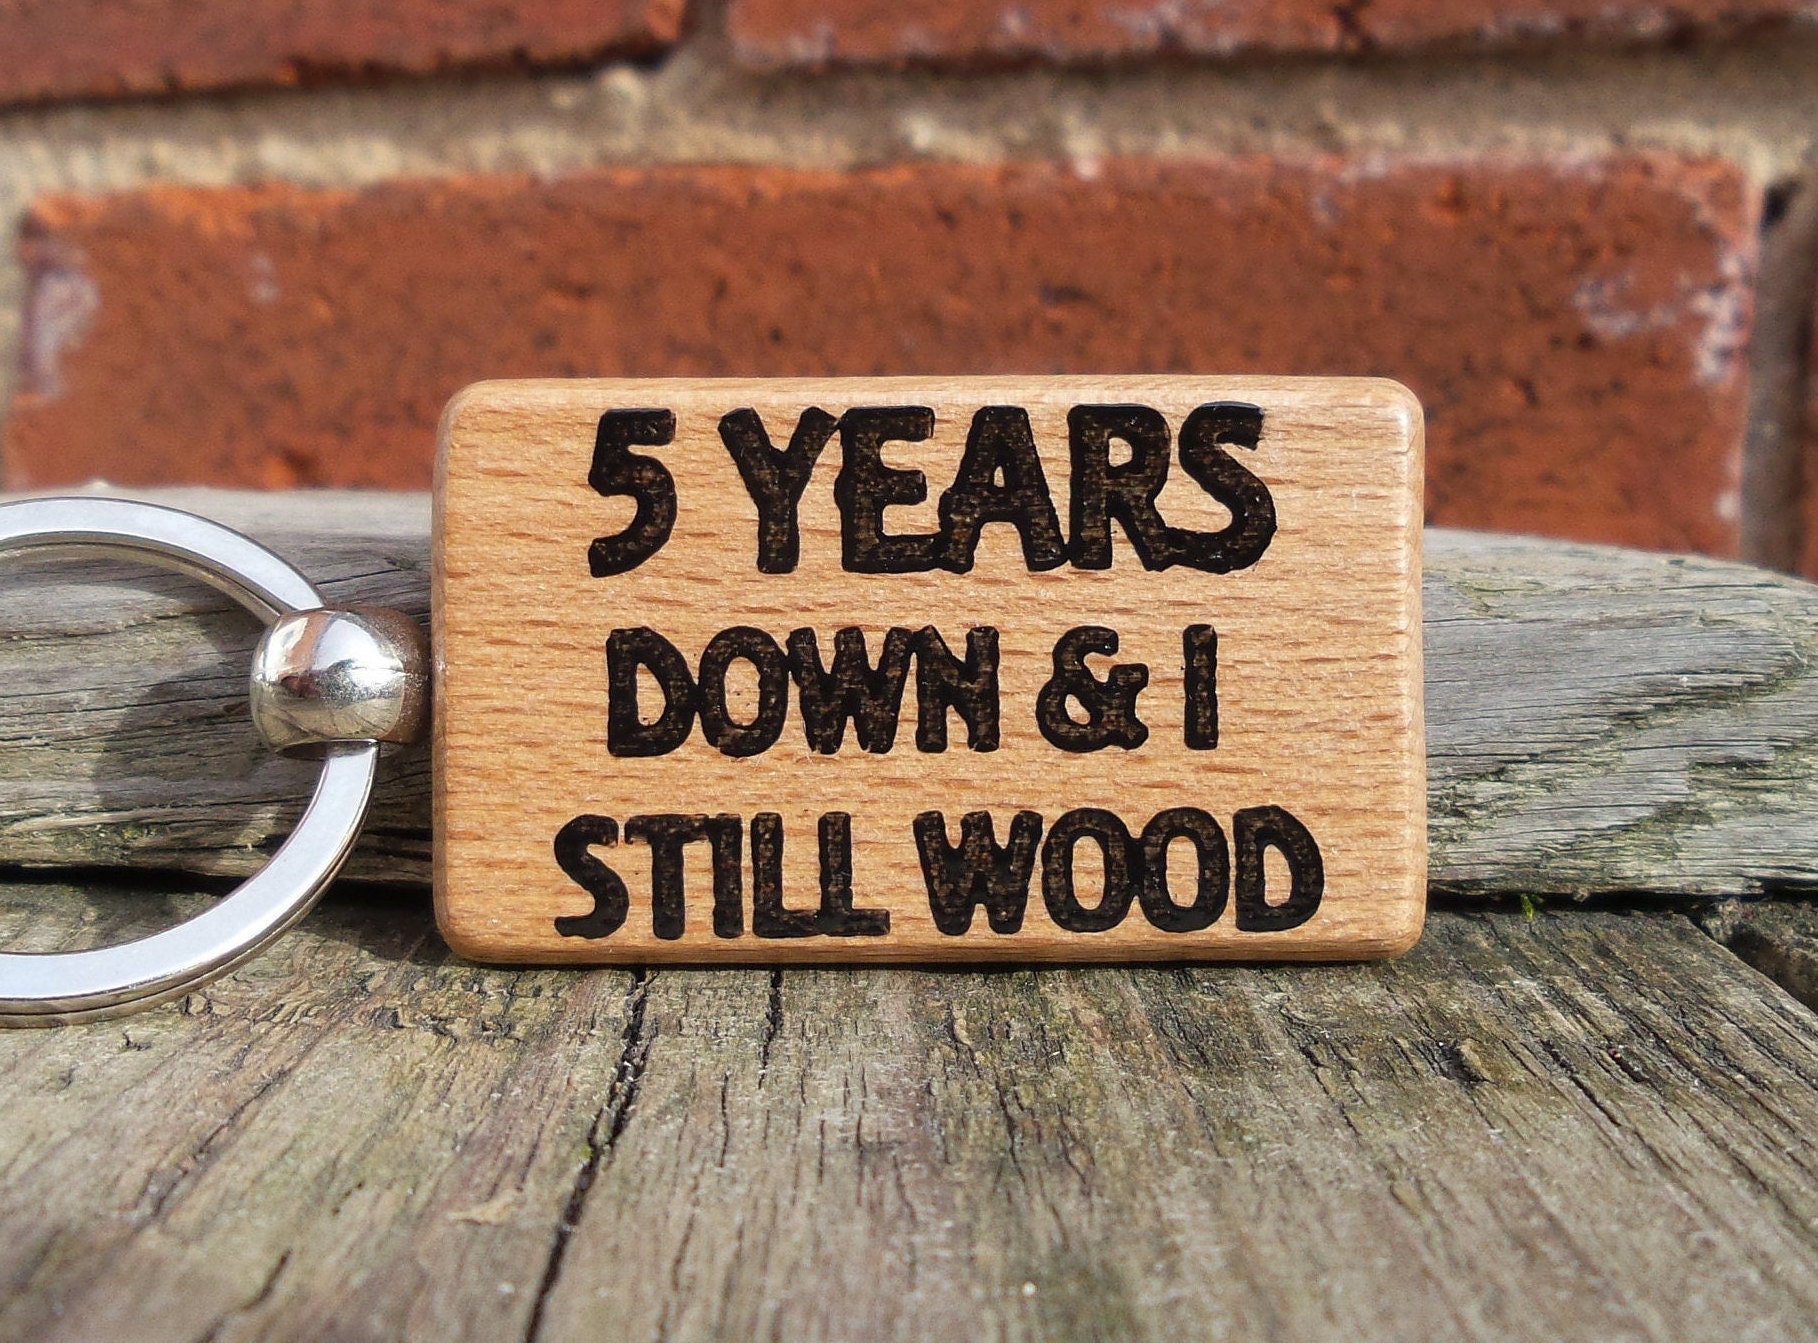 21. "5 Years Down & I Still WOOD" Keychain